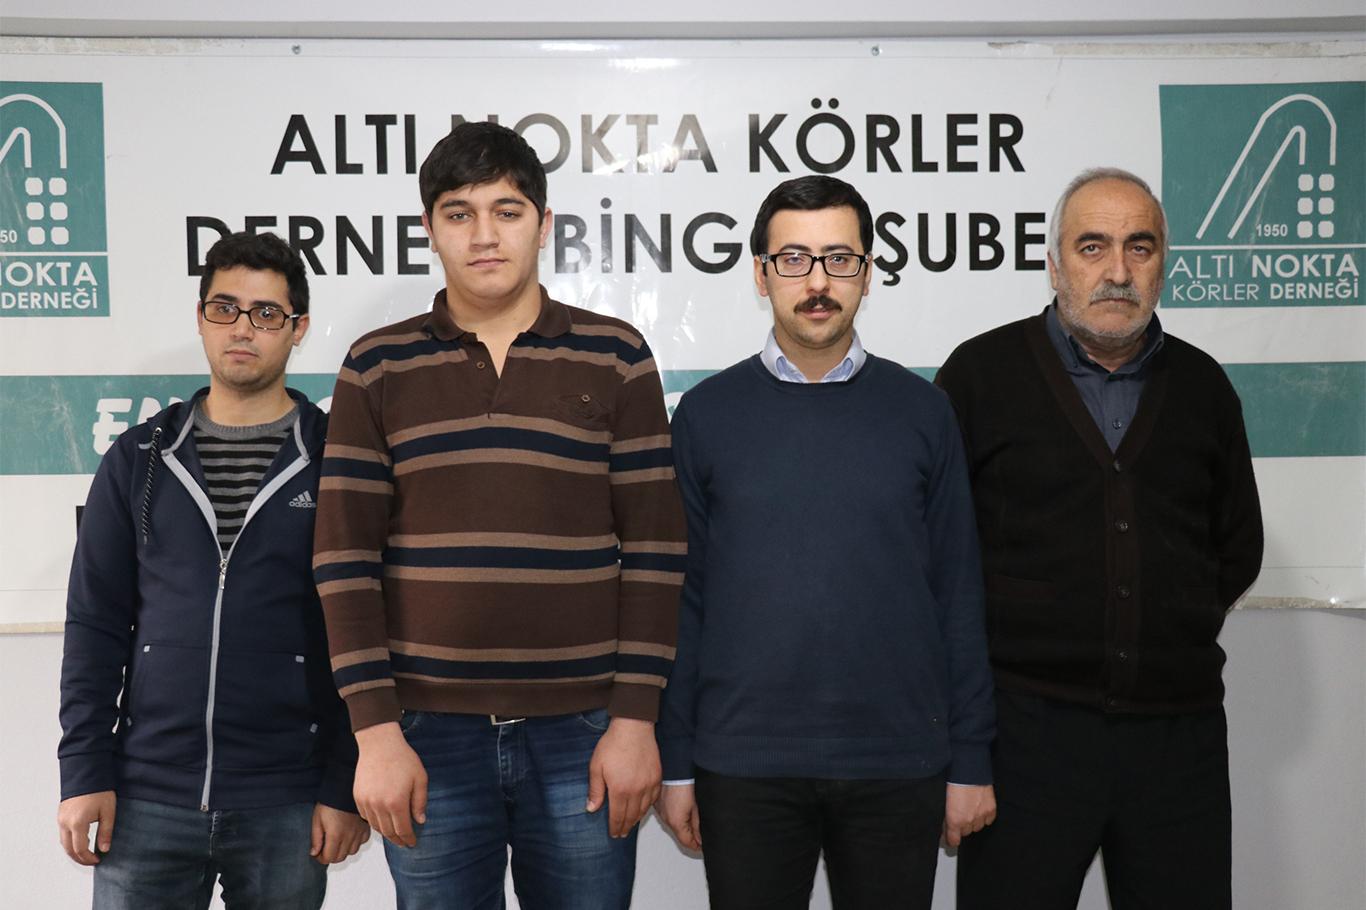 Adana'da engelli vatandaşın darp edilmesi Bingöl’de kınandı